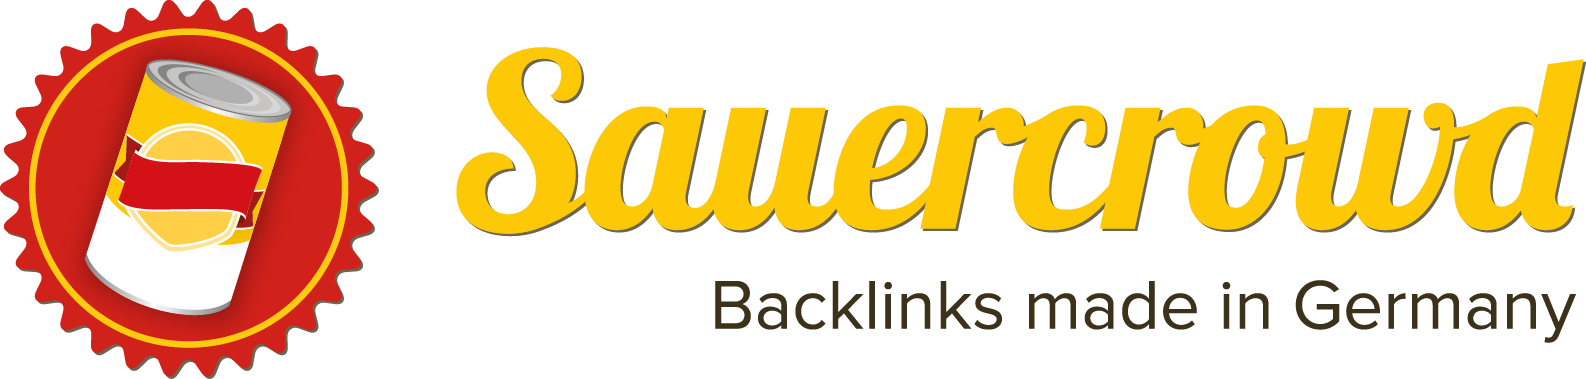 Logo von Sauercrowd